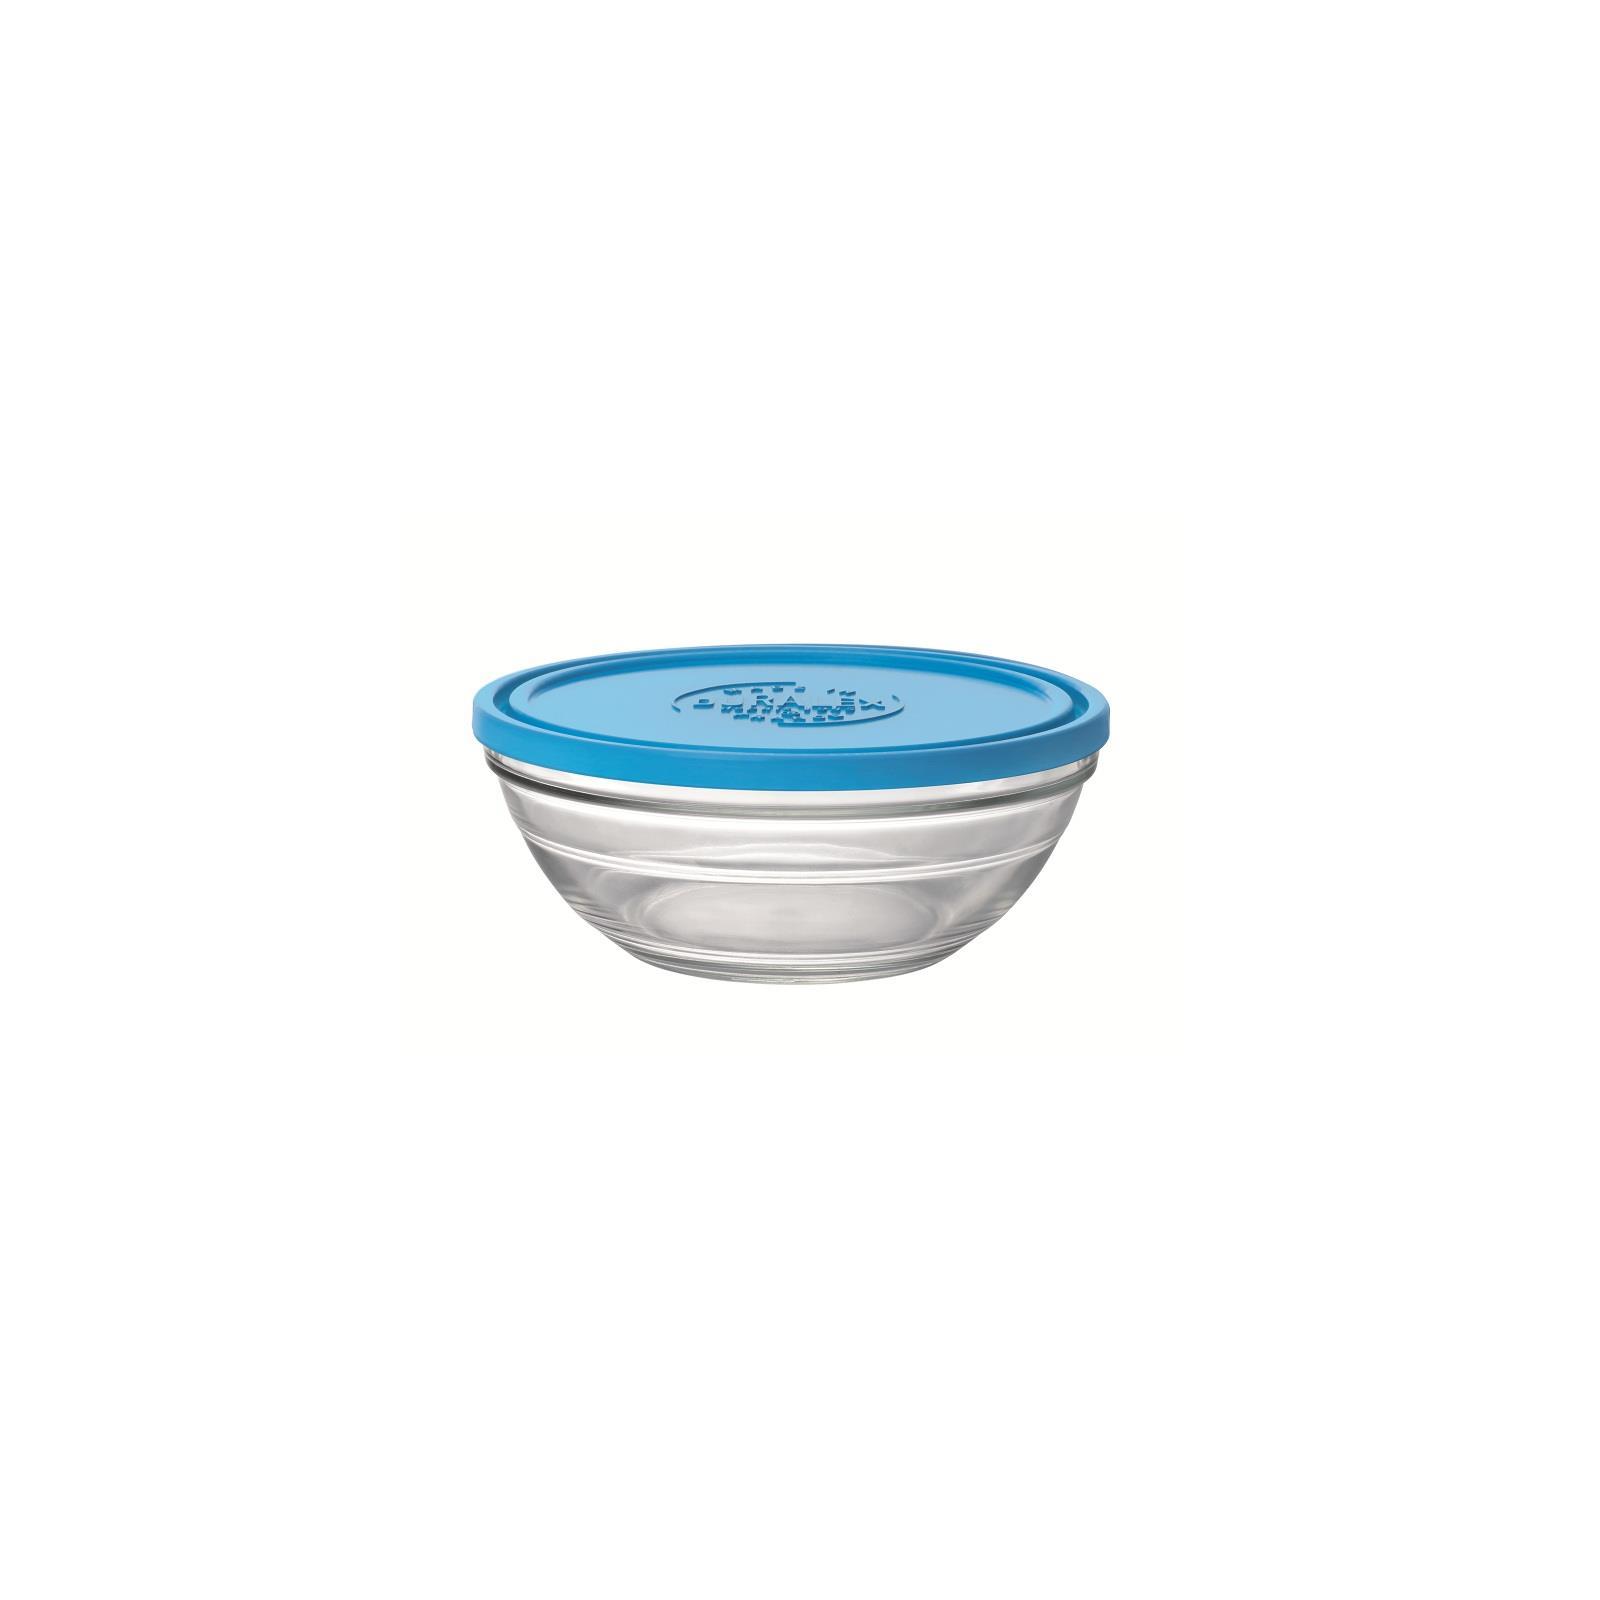 Пищевой контейнер Duralex Lys Rond Blue 1590 мл 20,5 см (9067AM06)